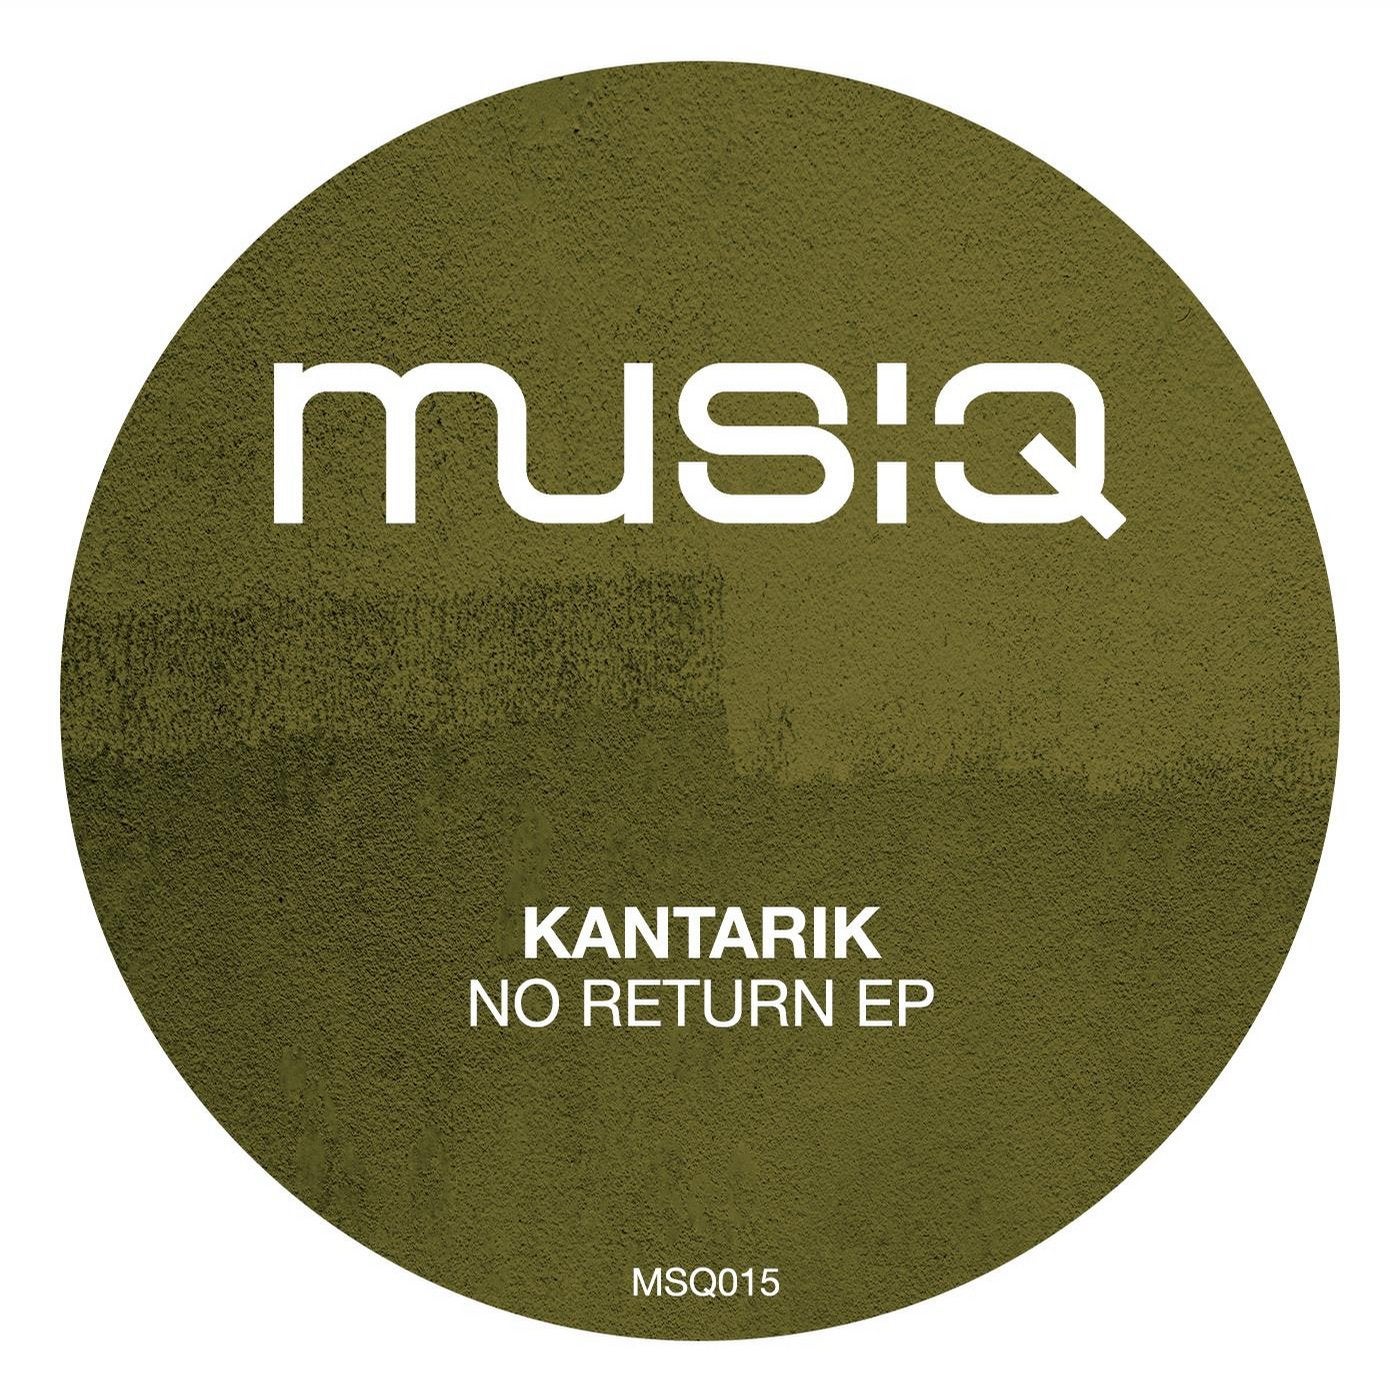 Kantarik music download - Beatport